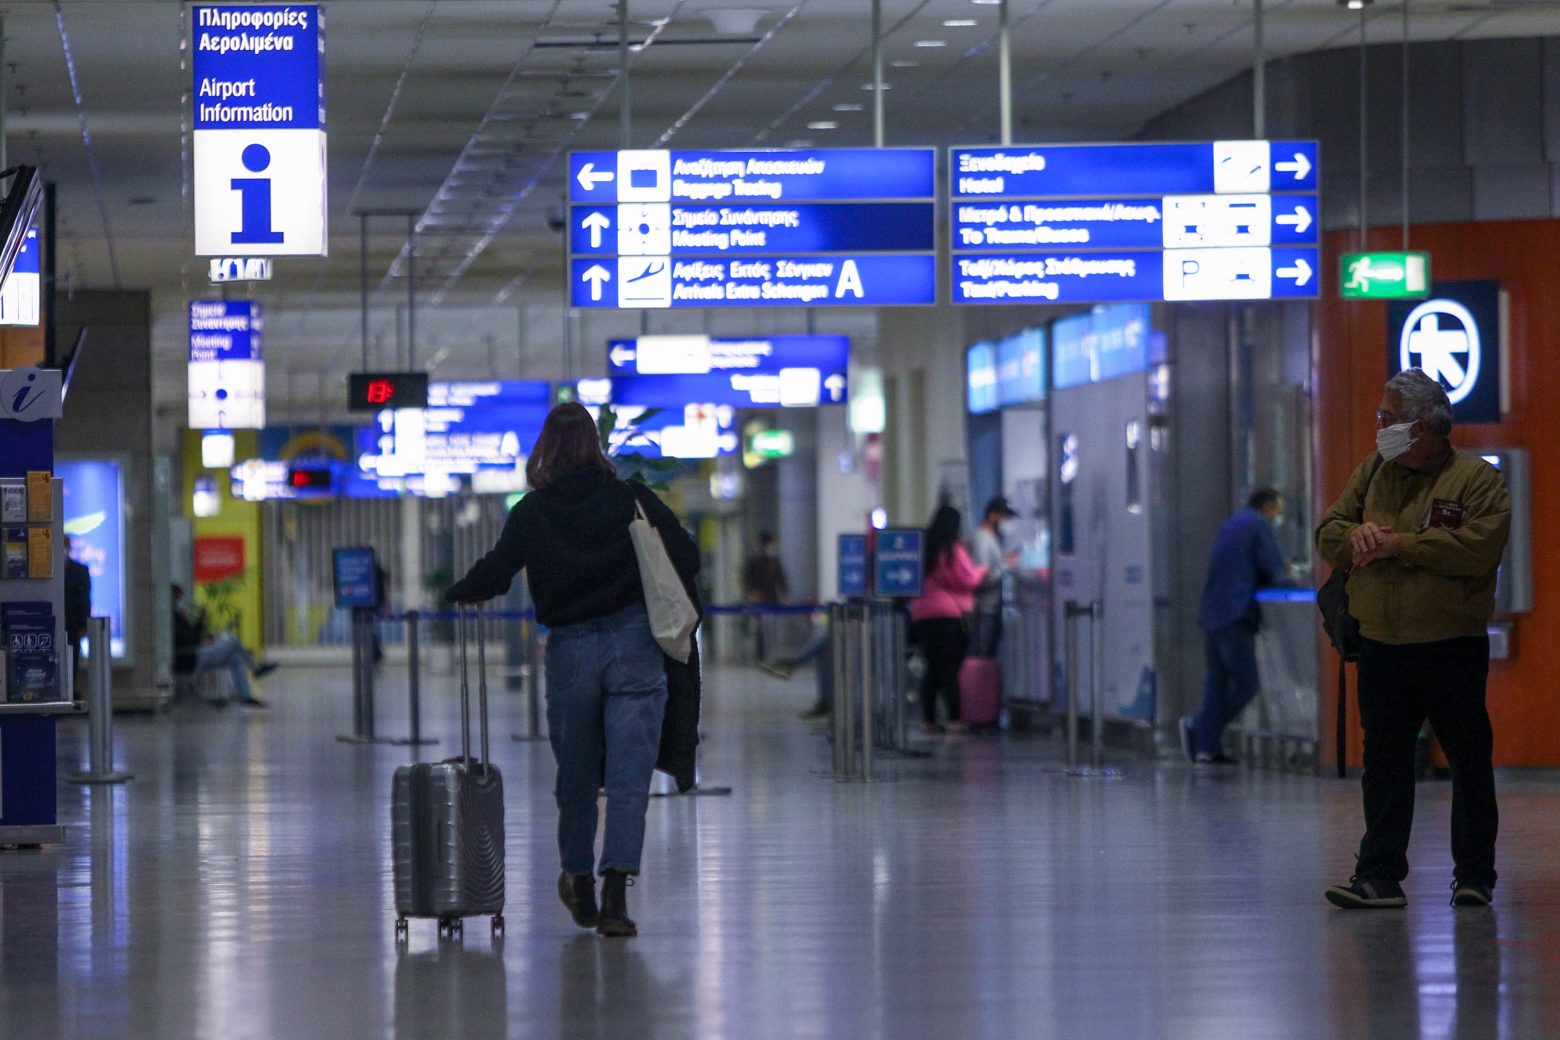 ΥΠΑ – Νέα ταξιδιωτική οδηγία για πτήσεις εξωτερικού – Τι ισχύει με την καραντίνα